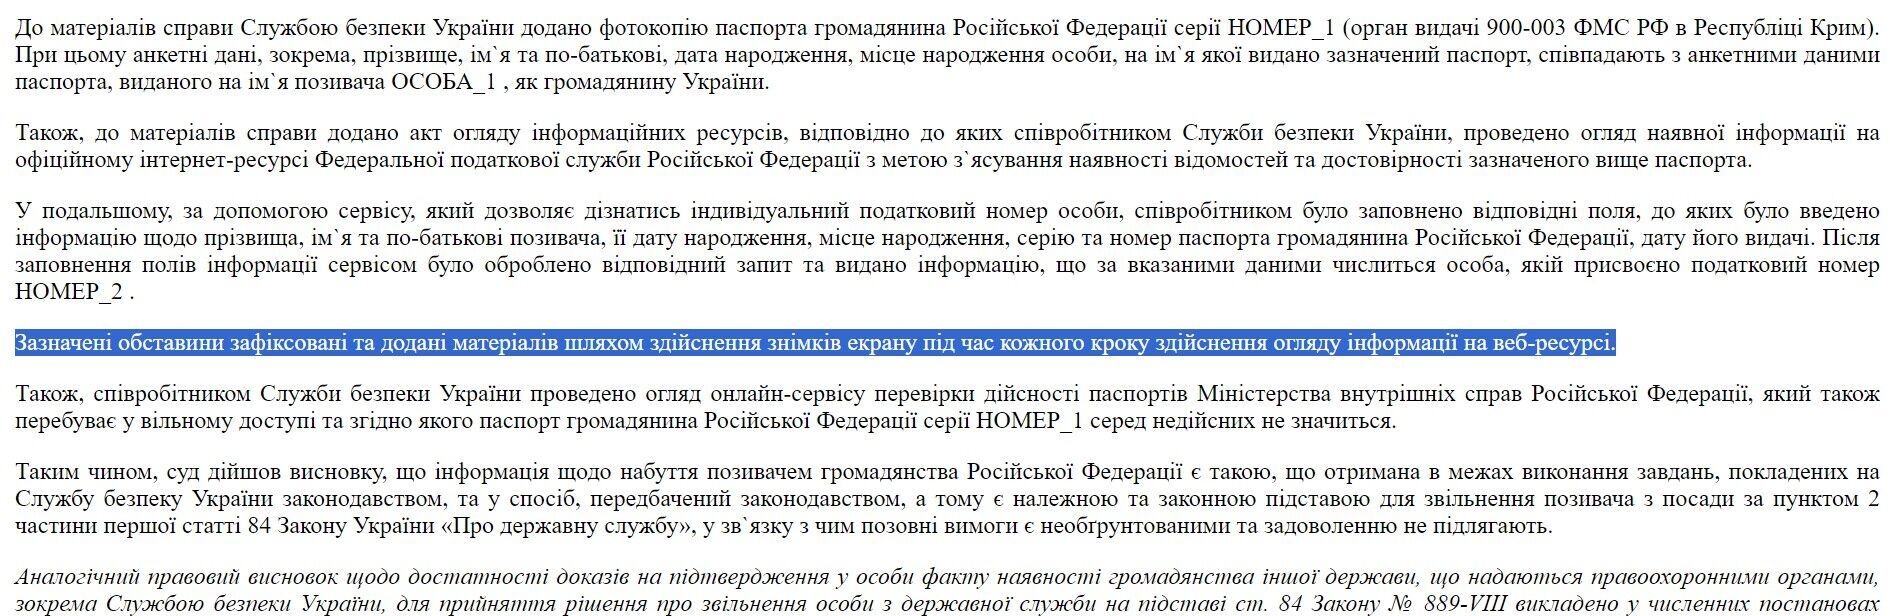 Рішення Окружного адміністративного суду міста Києва 